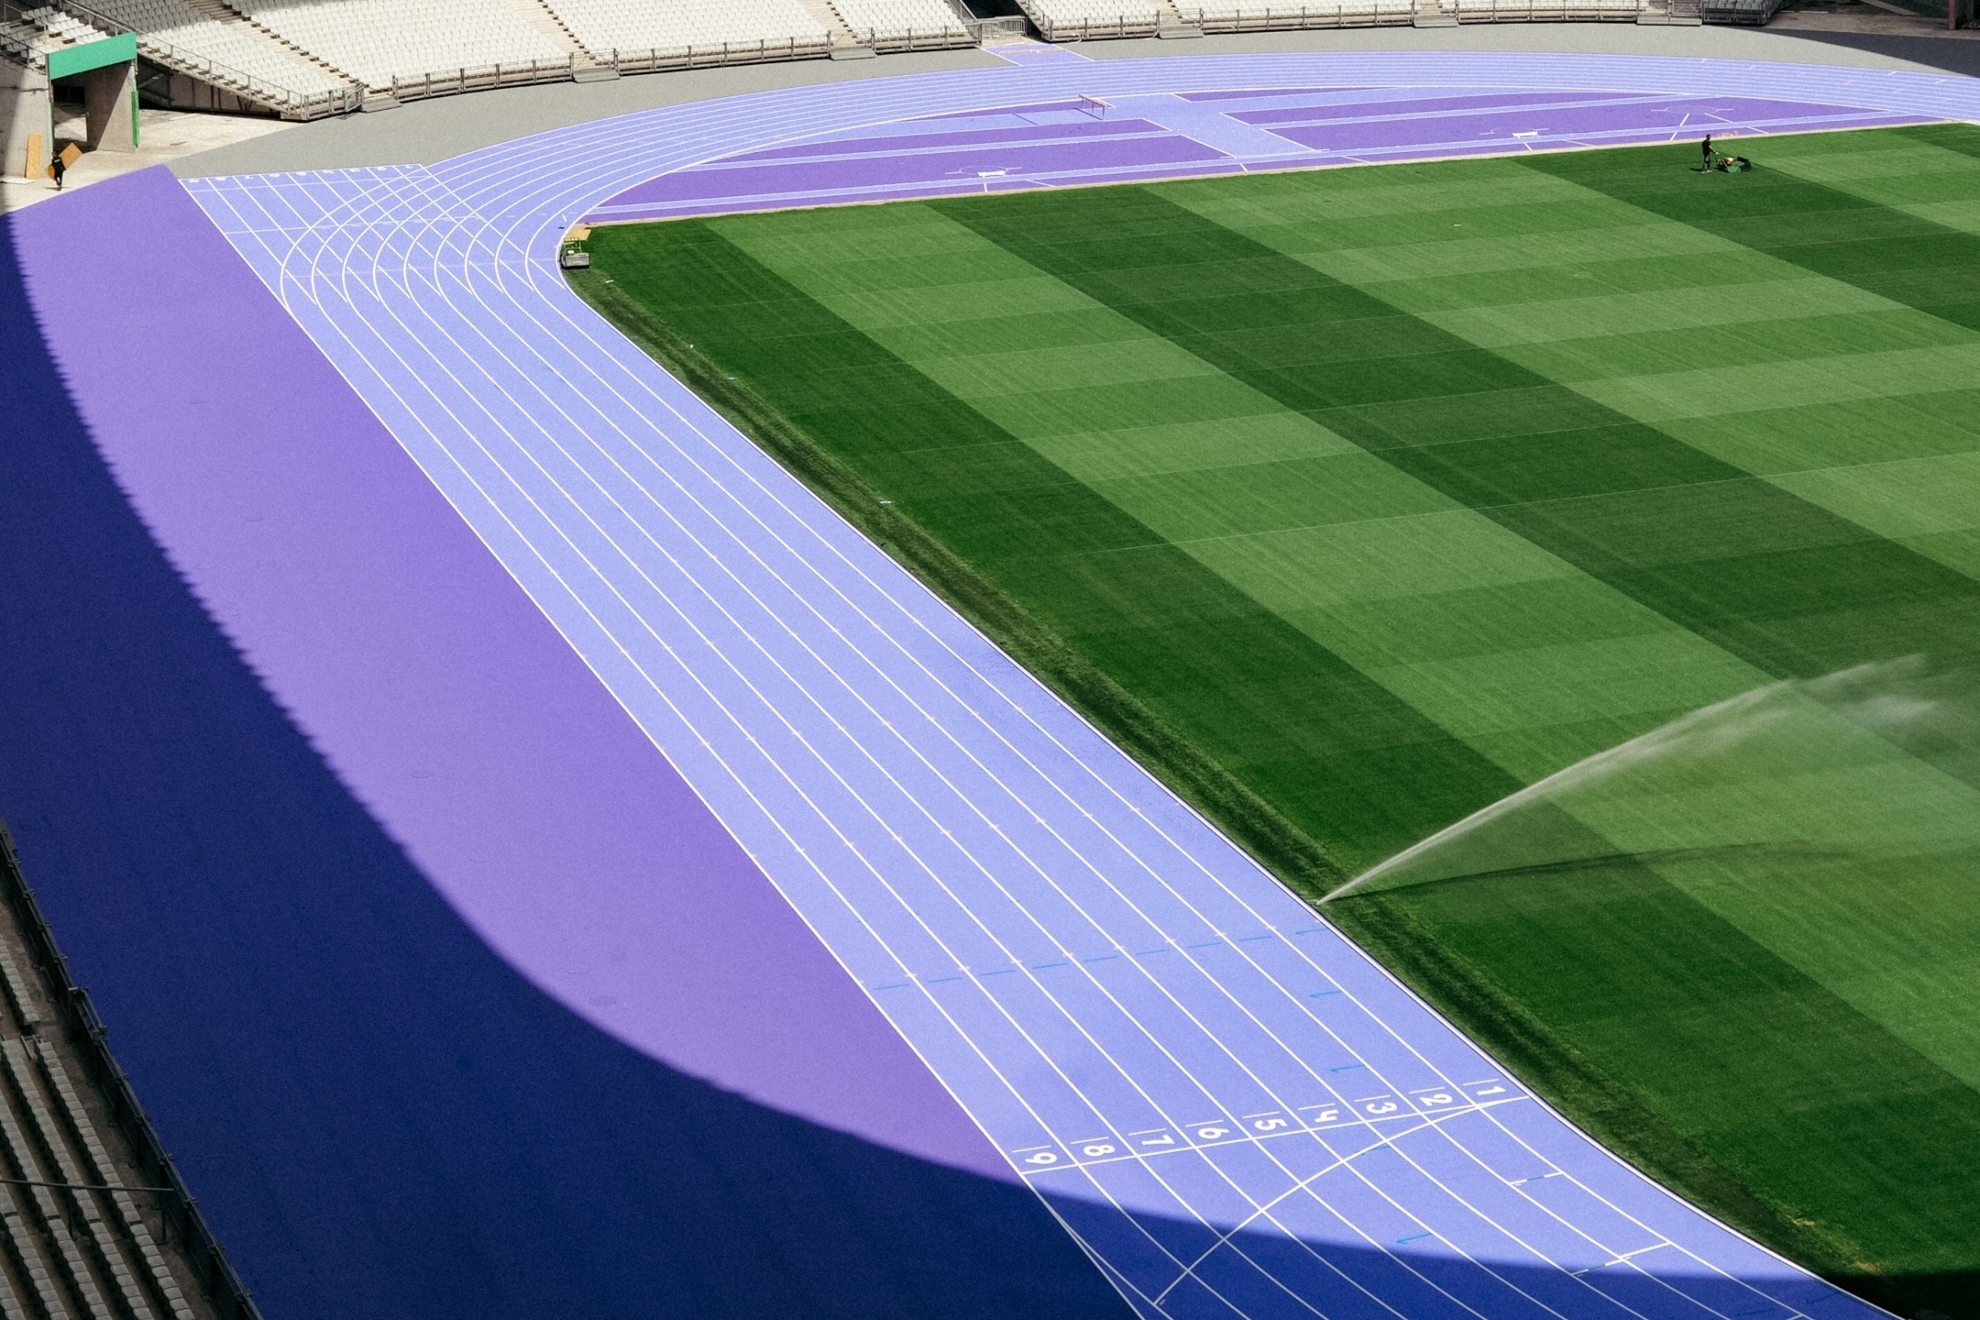 La pista del Estadio de Francia que acoger� el atletismo en los Juegos ser�... �morada!